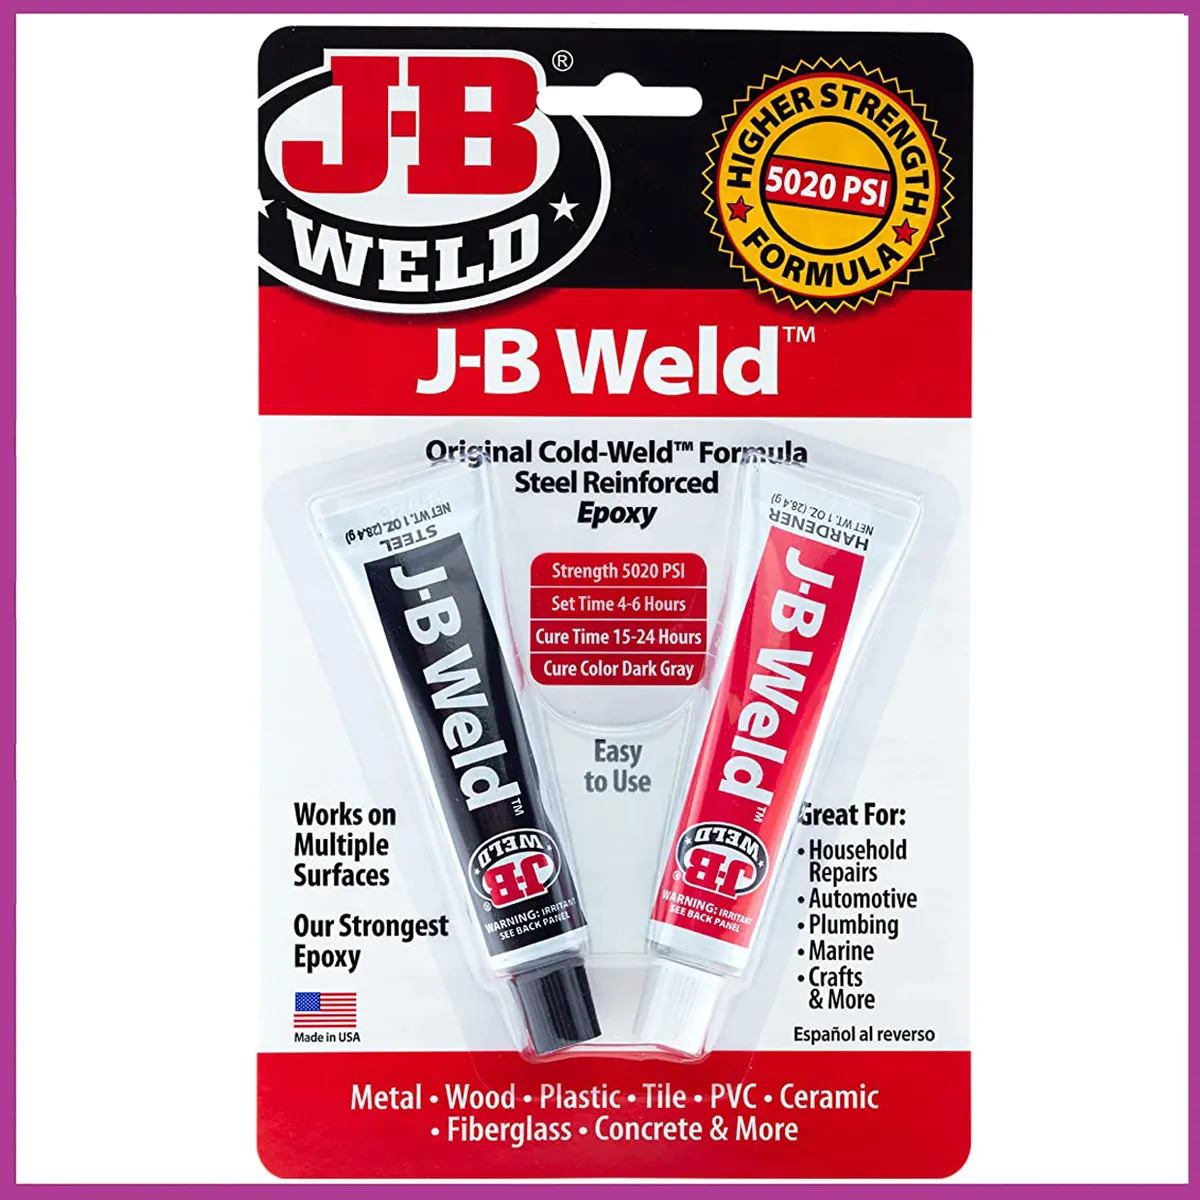 JB Weld’s Original Cold-Weld epoxy